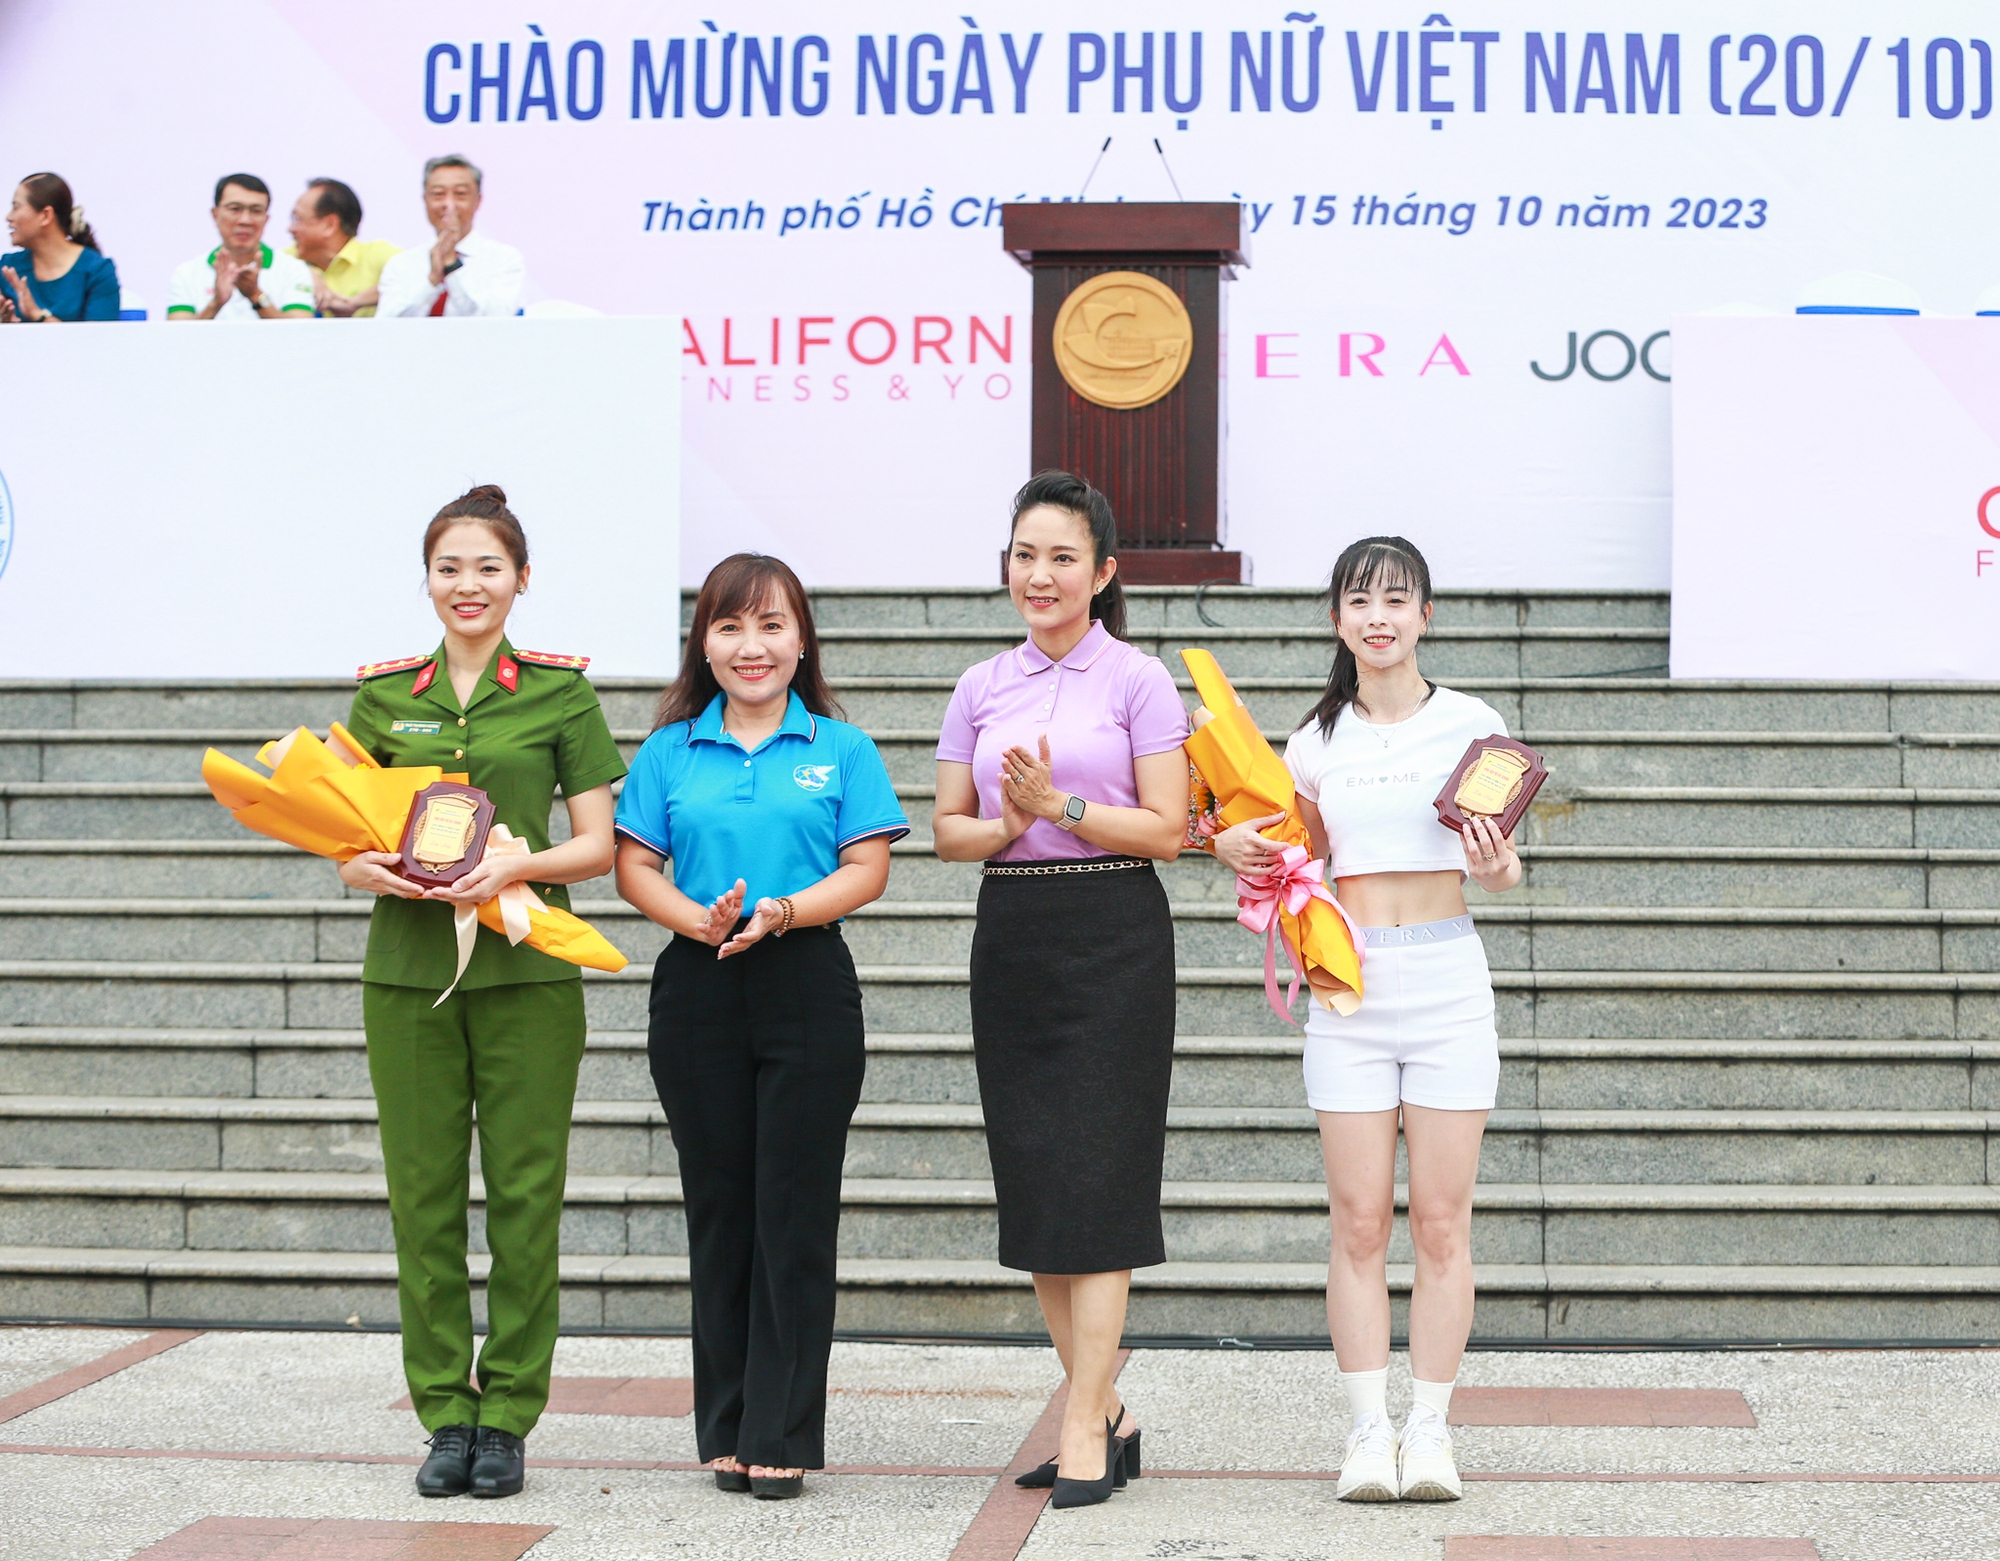 TP HCM tổ chức buổi đồng diễn Aerobic quy mô lớn chào mừng ngày Phụ nữ Việt Nam - Ảnh 2.